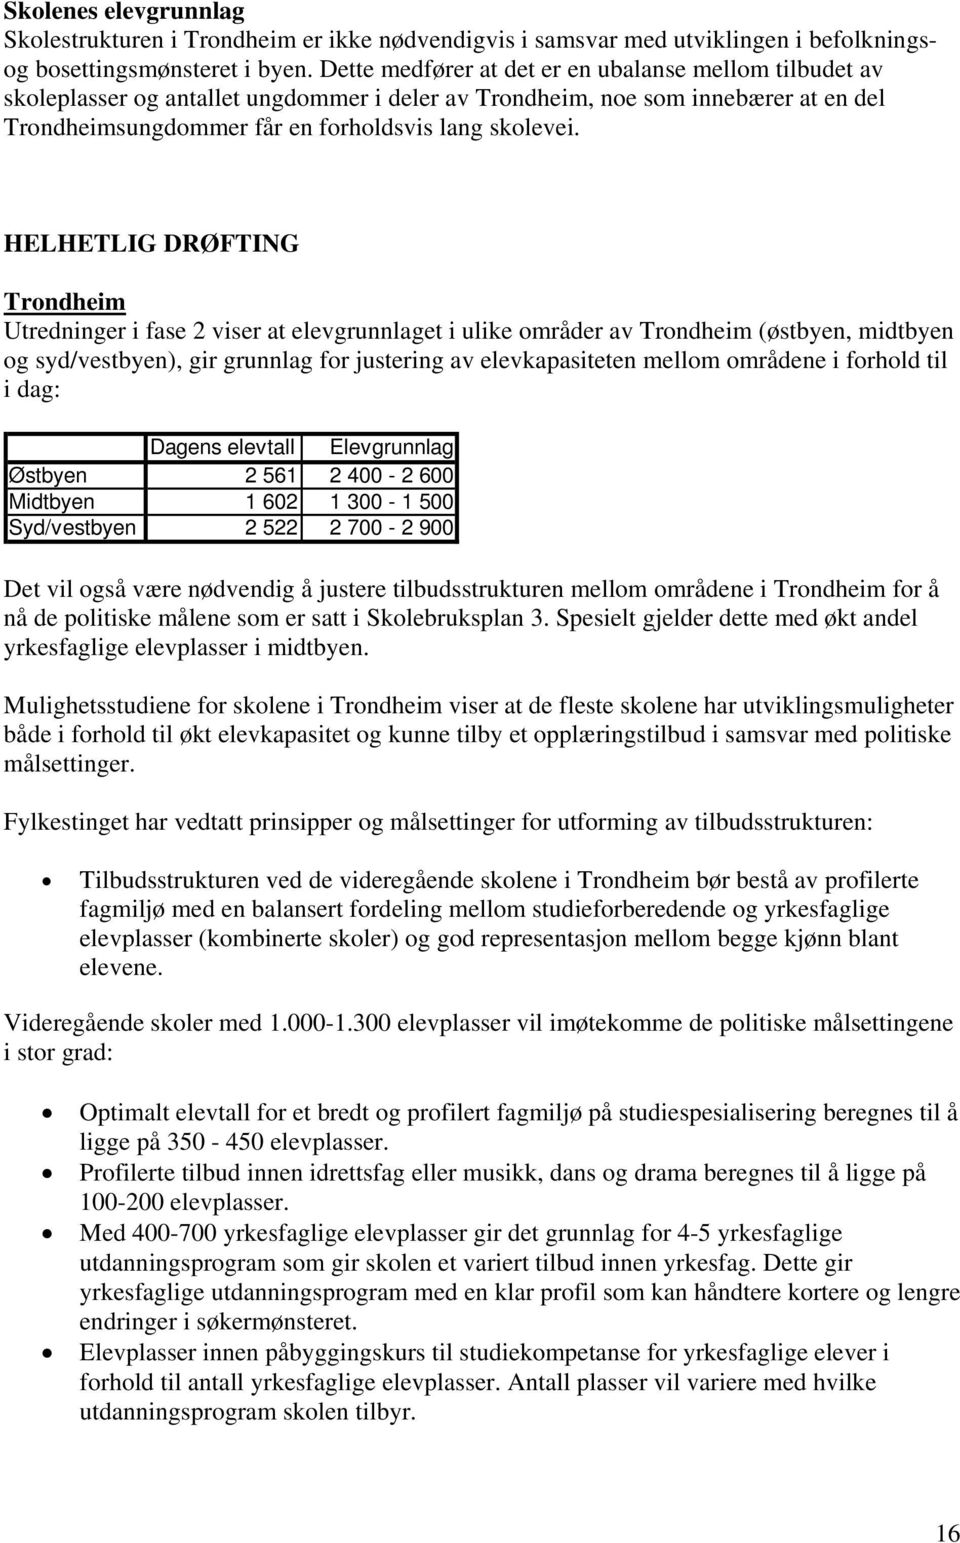 HELHETLIG DRØFTING Trondheim Utredninger i fase 2 viser at elevgrunnlaget i ulike områder av Trondheim (østbyen, midtbyen og syd/vestbyen), gir grunnlag for justering av elevkapasiteten mellom